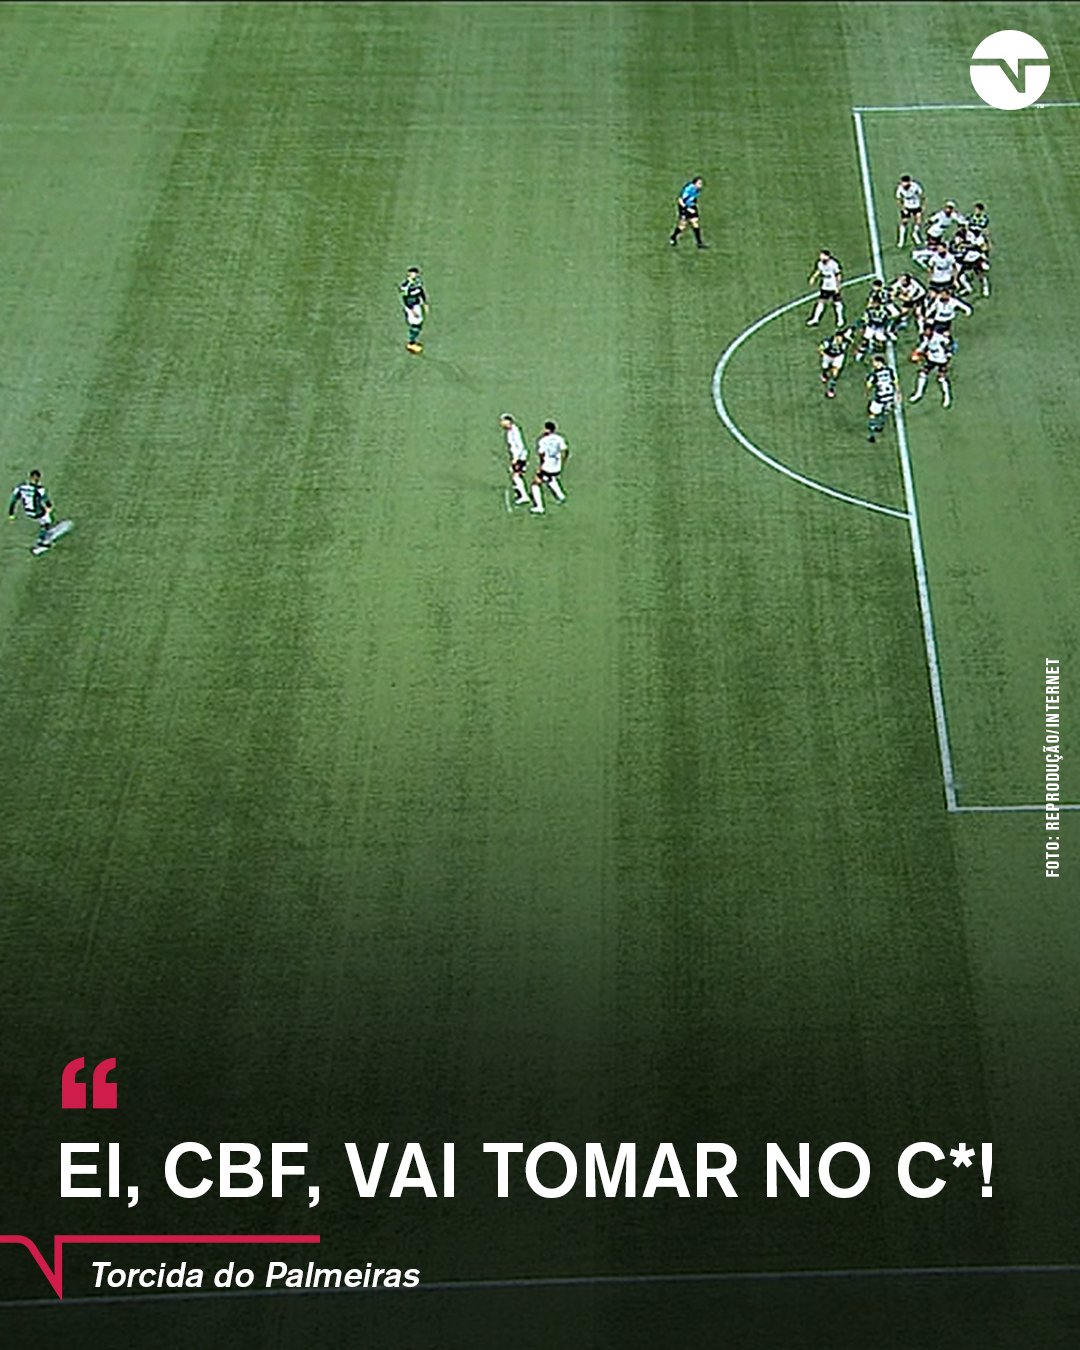 O Palmeiras é bi rebaixado e não tem mundial! 😂😂 #flamengo #palmeira